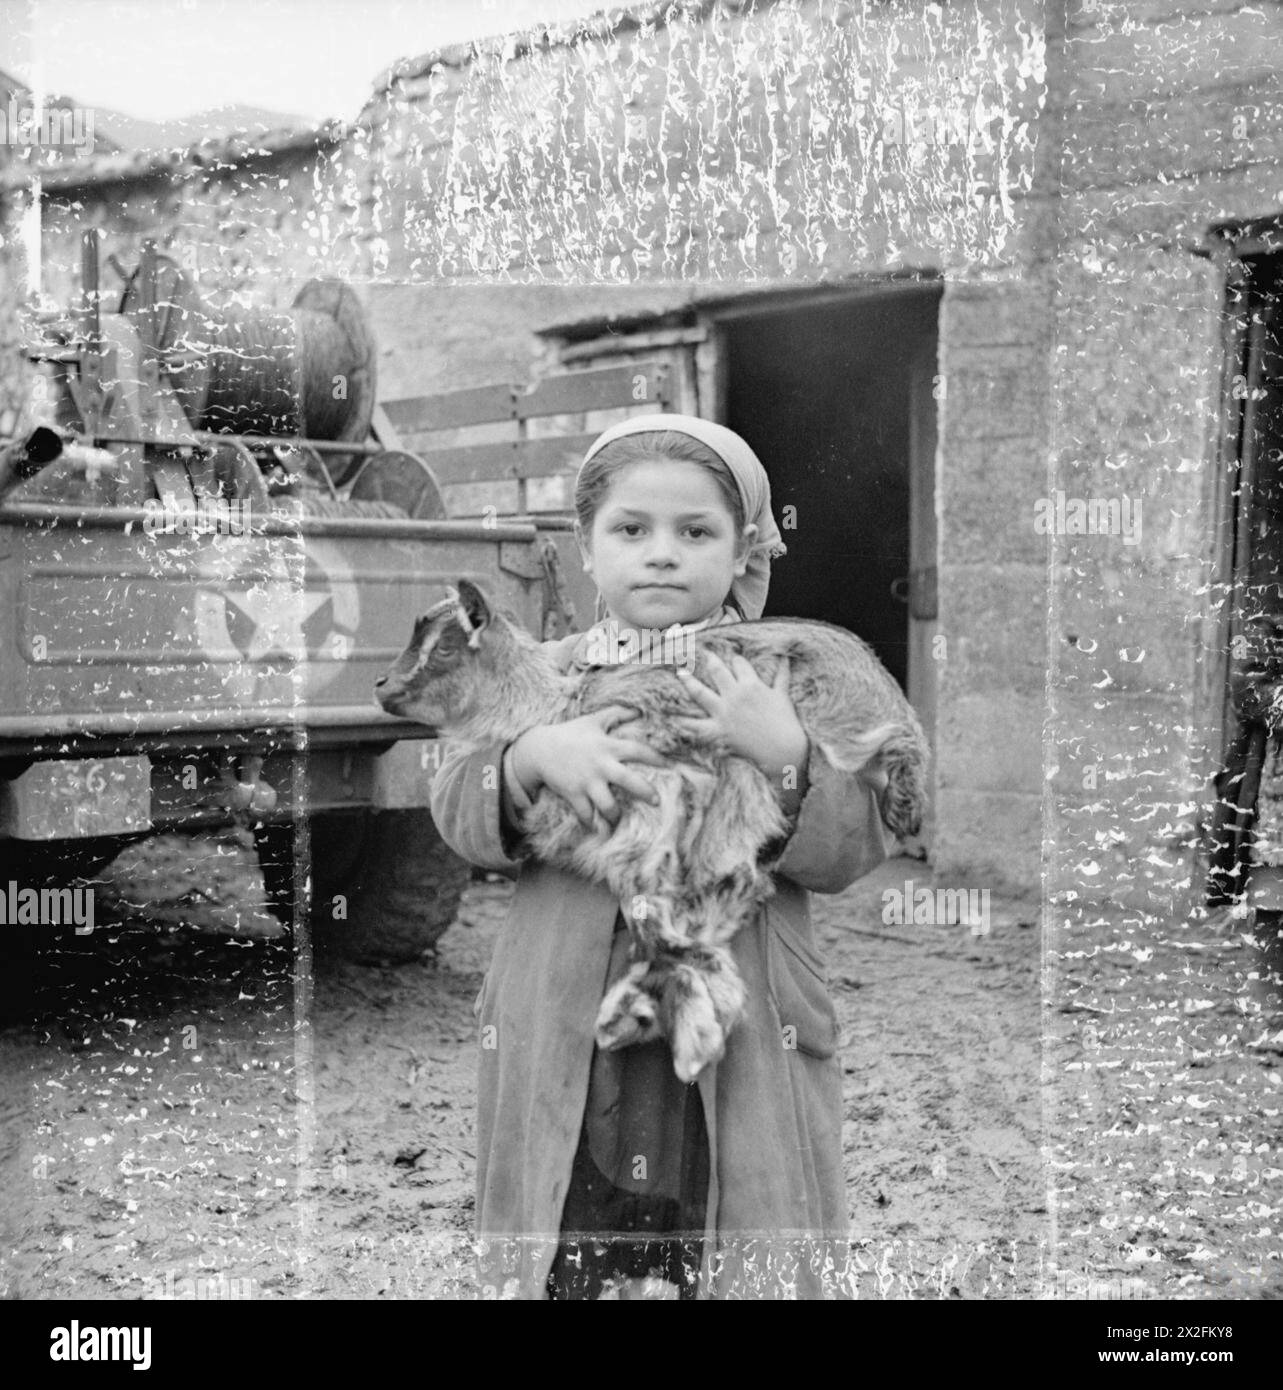 LA BATAILLE DE MONTE CASSINO, JANVIER-MAI 1944 - cette petite fille, l'une des évacuées, était déterminée à emmener sa chèvre de compagnie avec elle. Région de Cassino, 27 février 1944. En préparation de la troisième attaque sur Cassino, tous les civils de la région ont été évacués vers la partie de l'Italie contrôlée par les Alliés. Le gouvernement militaire allié avait un gros travail sur ses mains pour les enlever, 600 enlevés chaque jour. Considérant que les véhicules étaient nécessaires pour le transport des matériaux de guerre et les mauvaises conditions des voies, juste assez larges pour prendre un camion, ce fut une réalisation remarquable.Notez les marques Banque D'Images